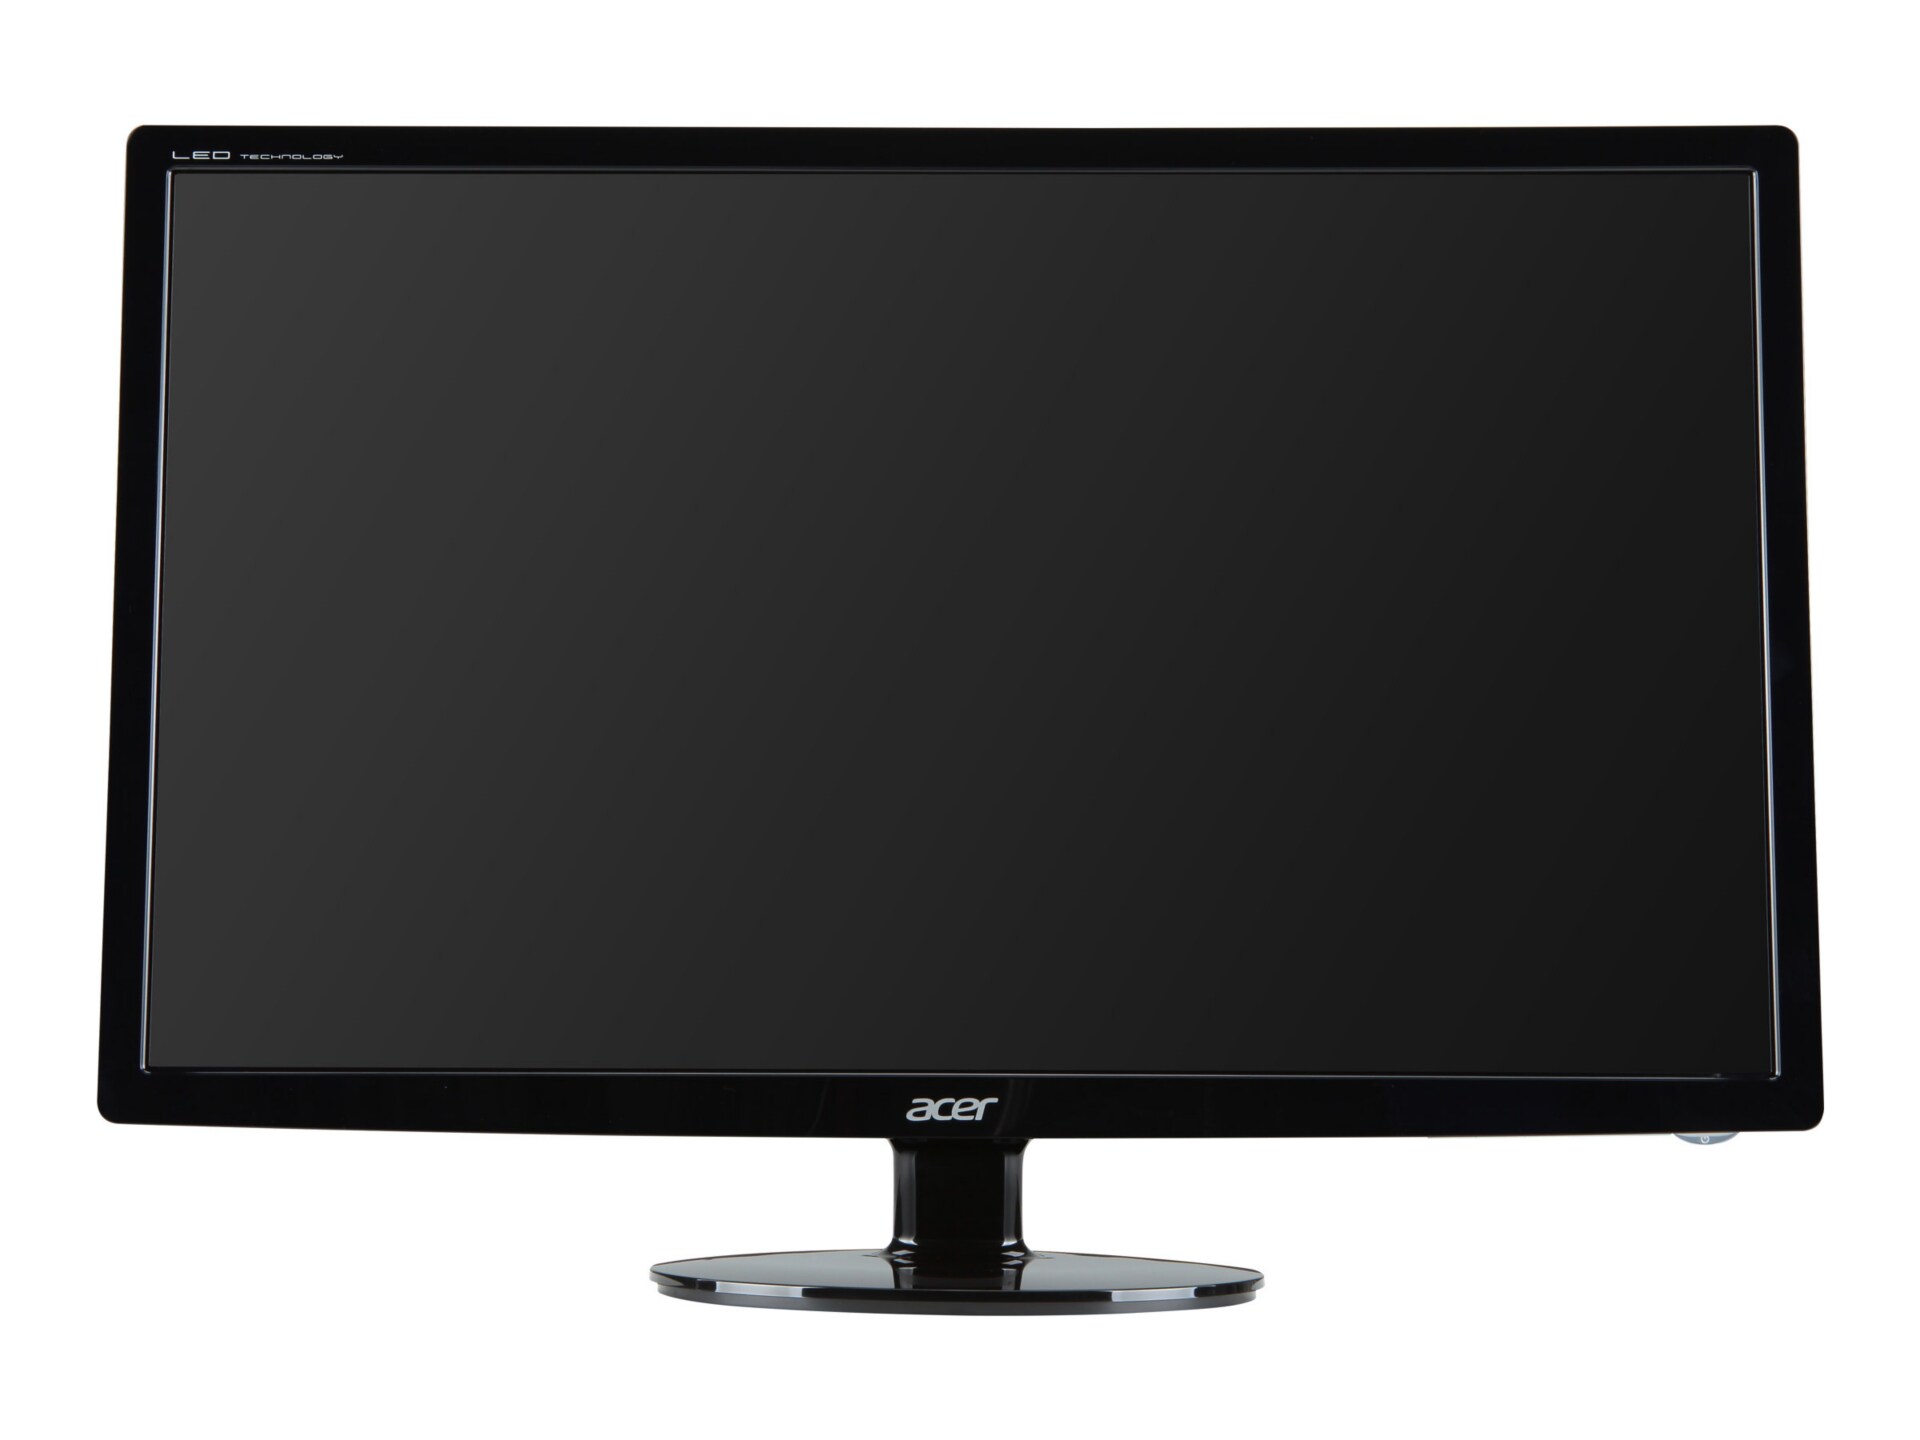 Acer S241HL - LED monitor - Full HD (1080p) - 24"